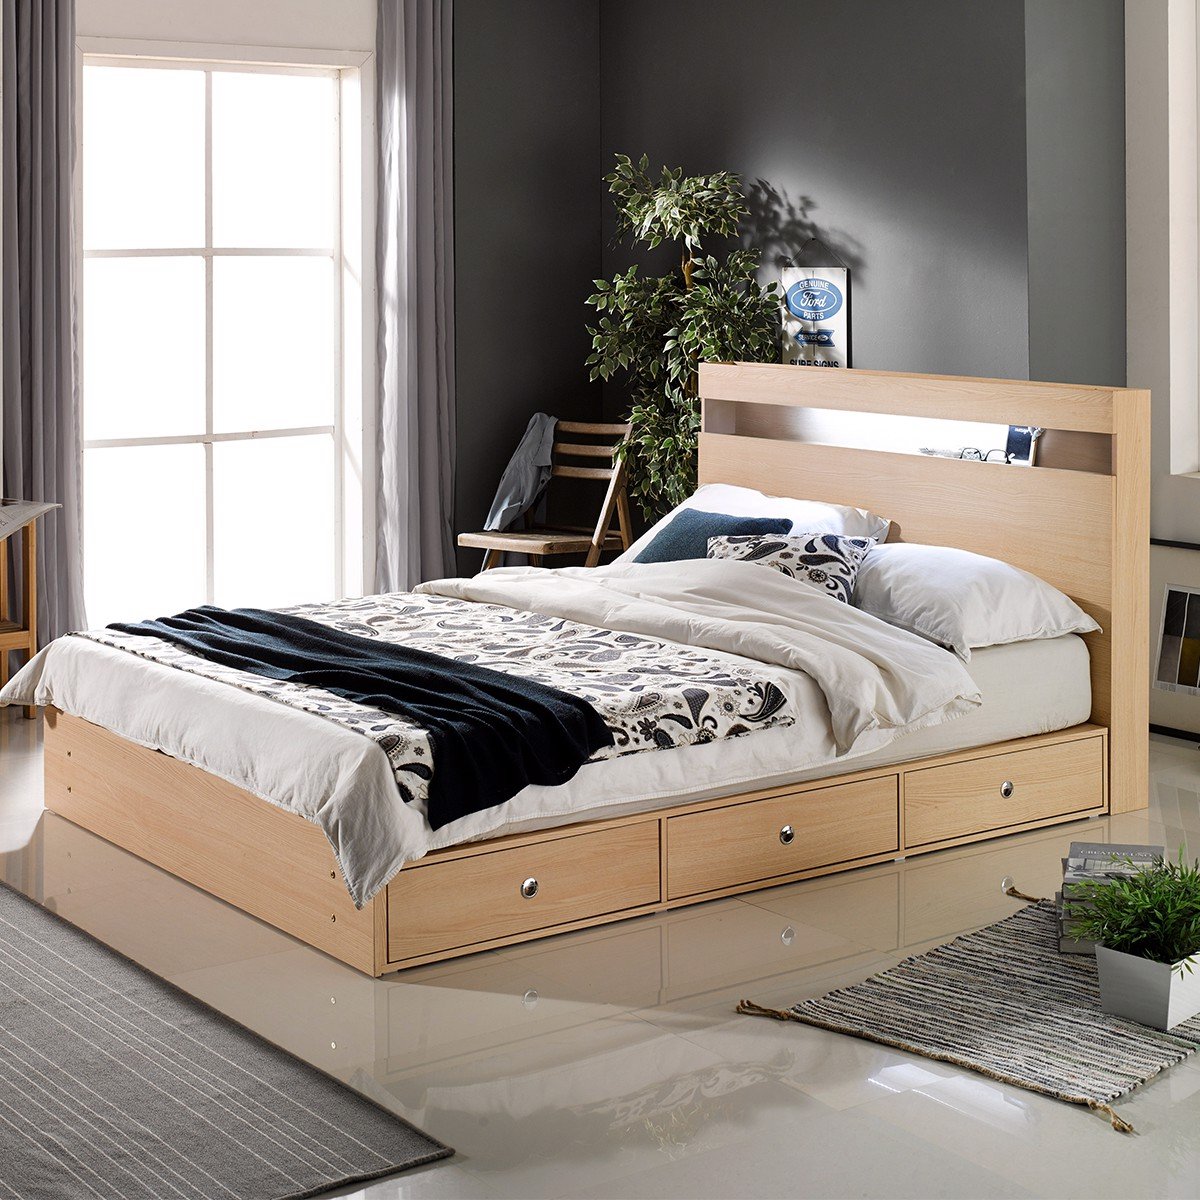 Đừng lo lắng nếu bạn đang tìm kiếm giường đơn giá rẻ. Năm 2024, bạn có thể tìm thấy các mẫu giường đẹp và rẻ tiền tại các cửa hàng nội thất. Các tùy chọn sẽ đa dạng hơn bao giờ hết để bạn có thể tìm được chiếc giường phù hợp với nhu cầu của mình. Hãy tận hưởng sự thoải mái của giấc ngủ trên chiếc giường đơn giản này!